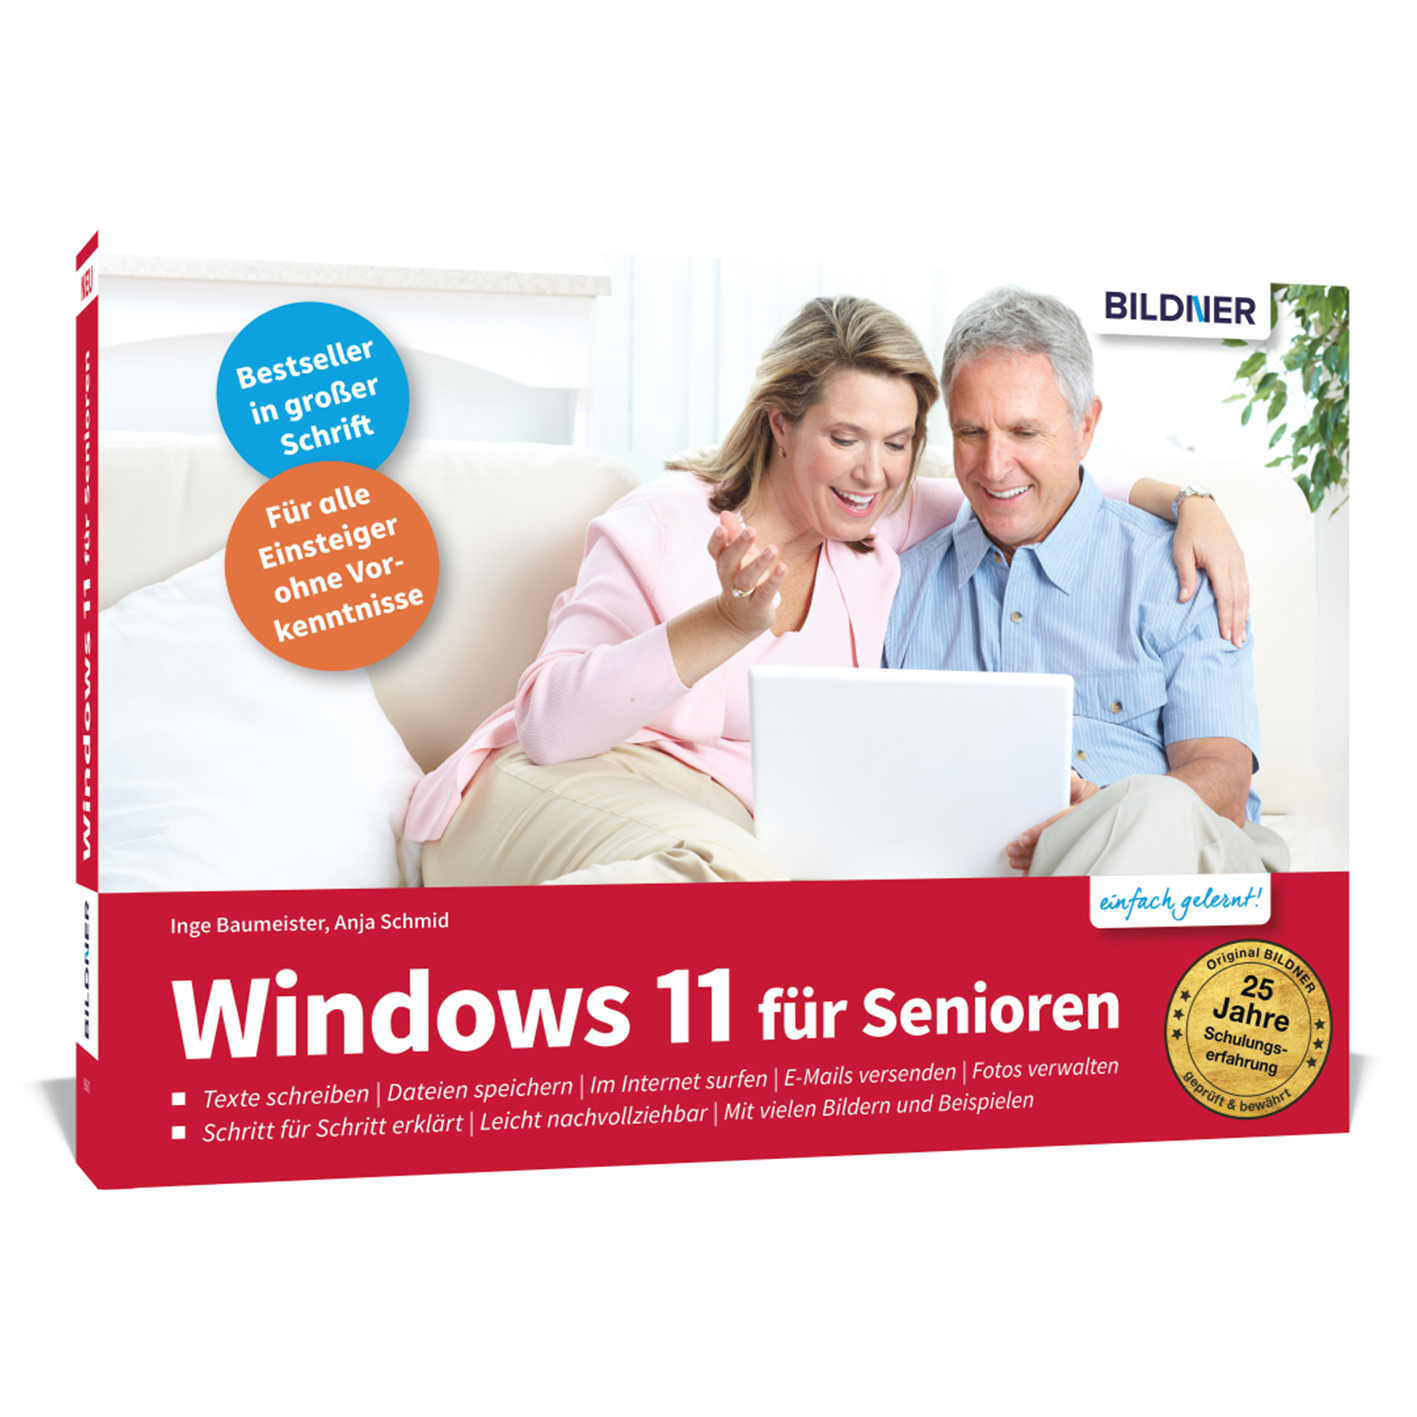 Windows 11 für Senioren - Das ohne Vorkenntnisse Einsteiger für Lernbuch umfassende